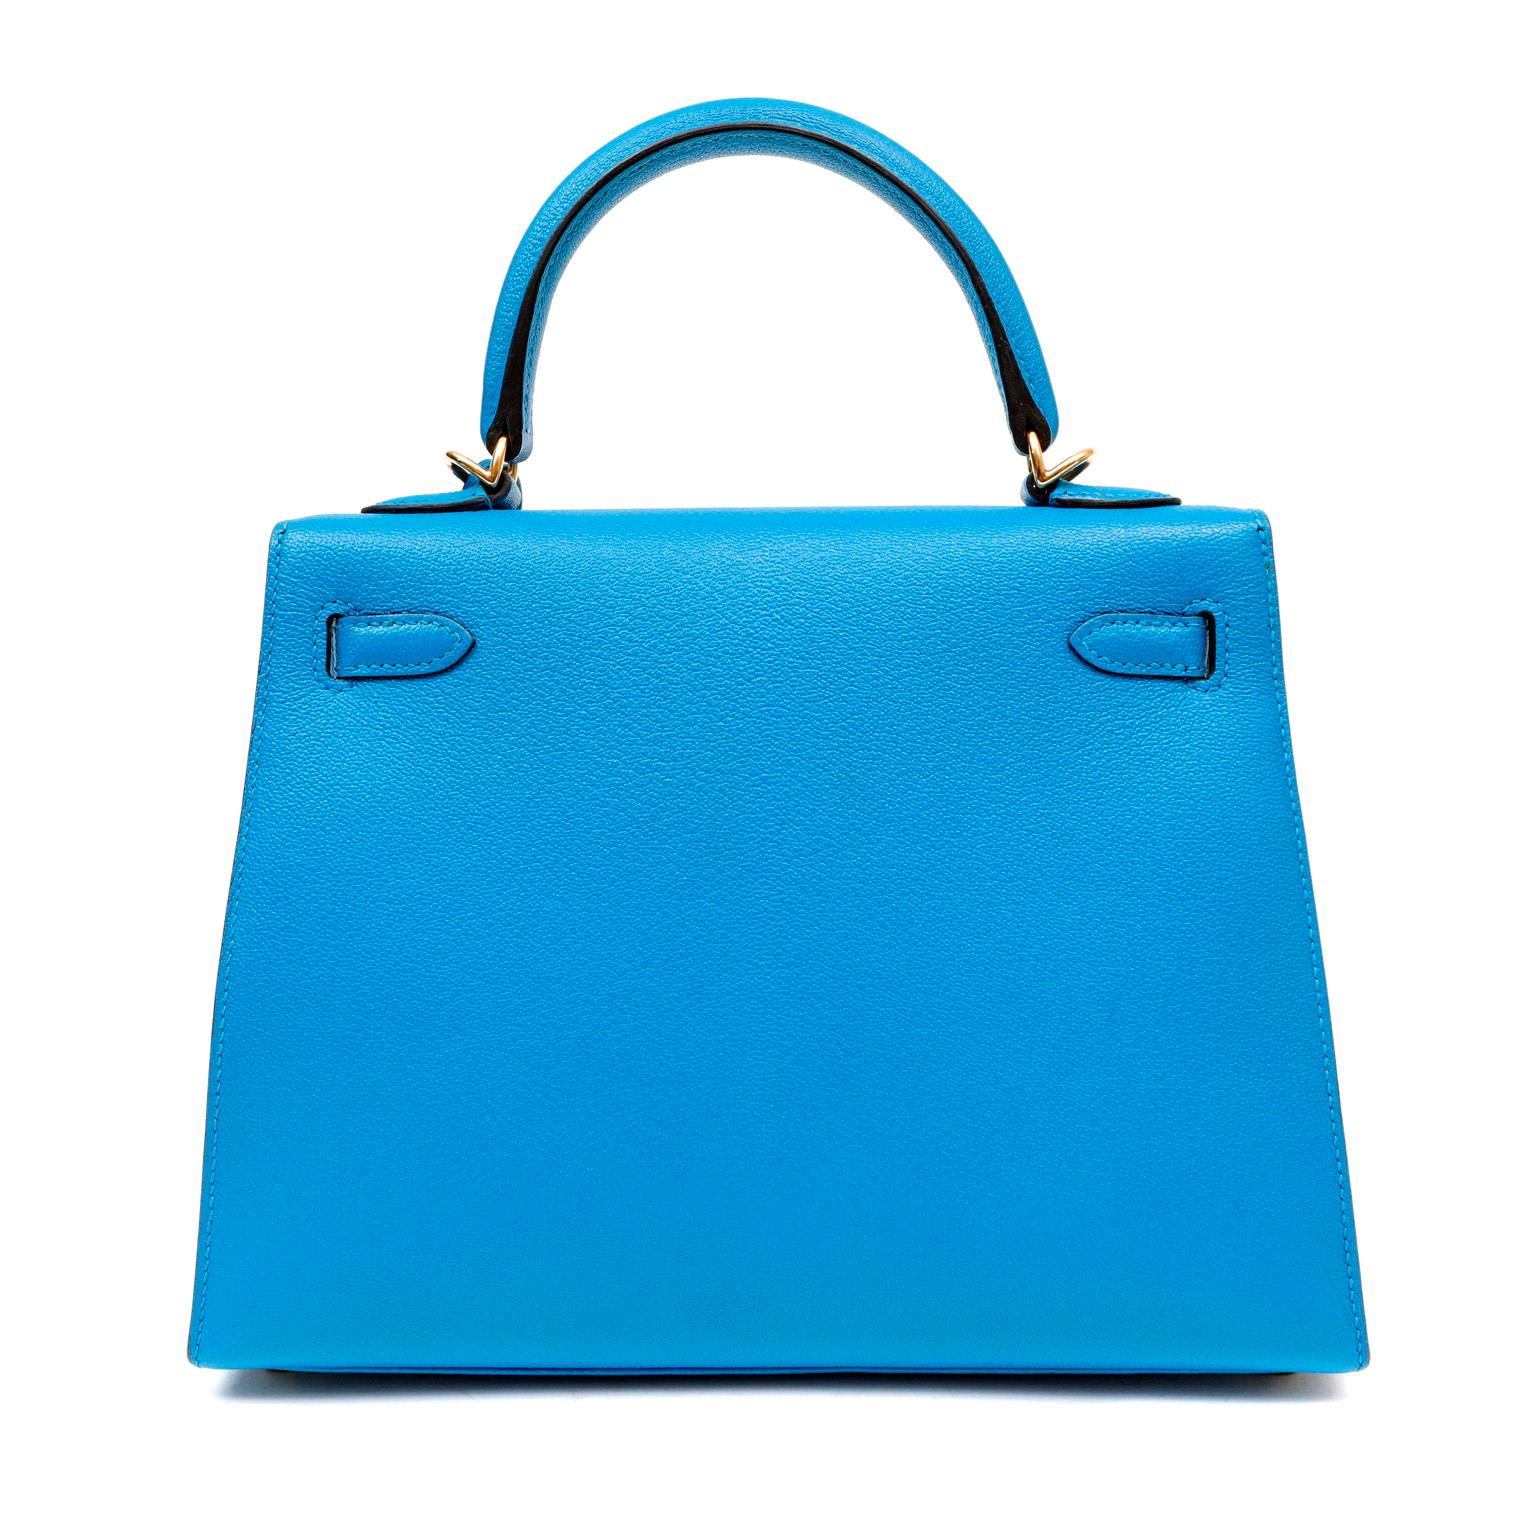 Hermès Turquoise Blue Chevre 25 cm Kelly 1